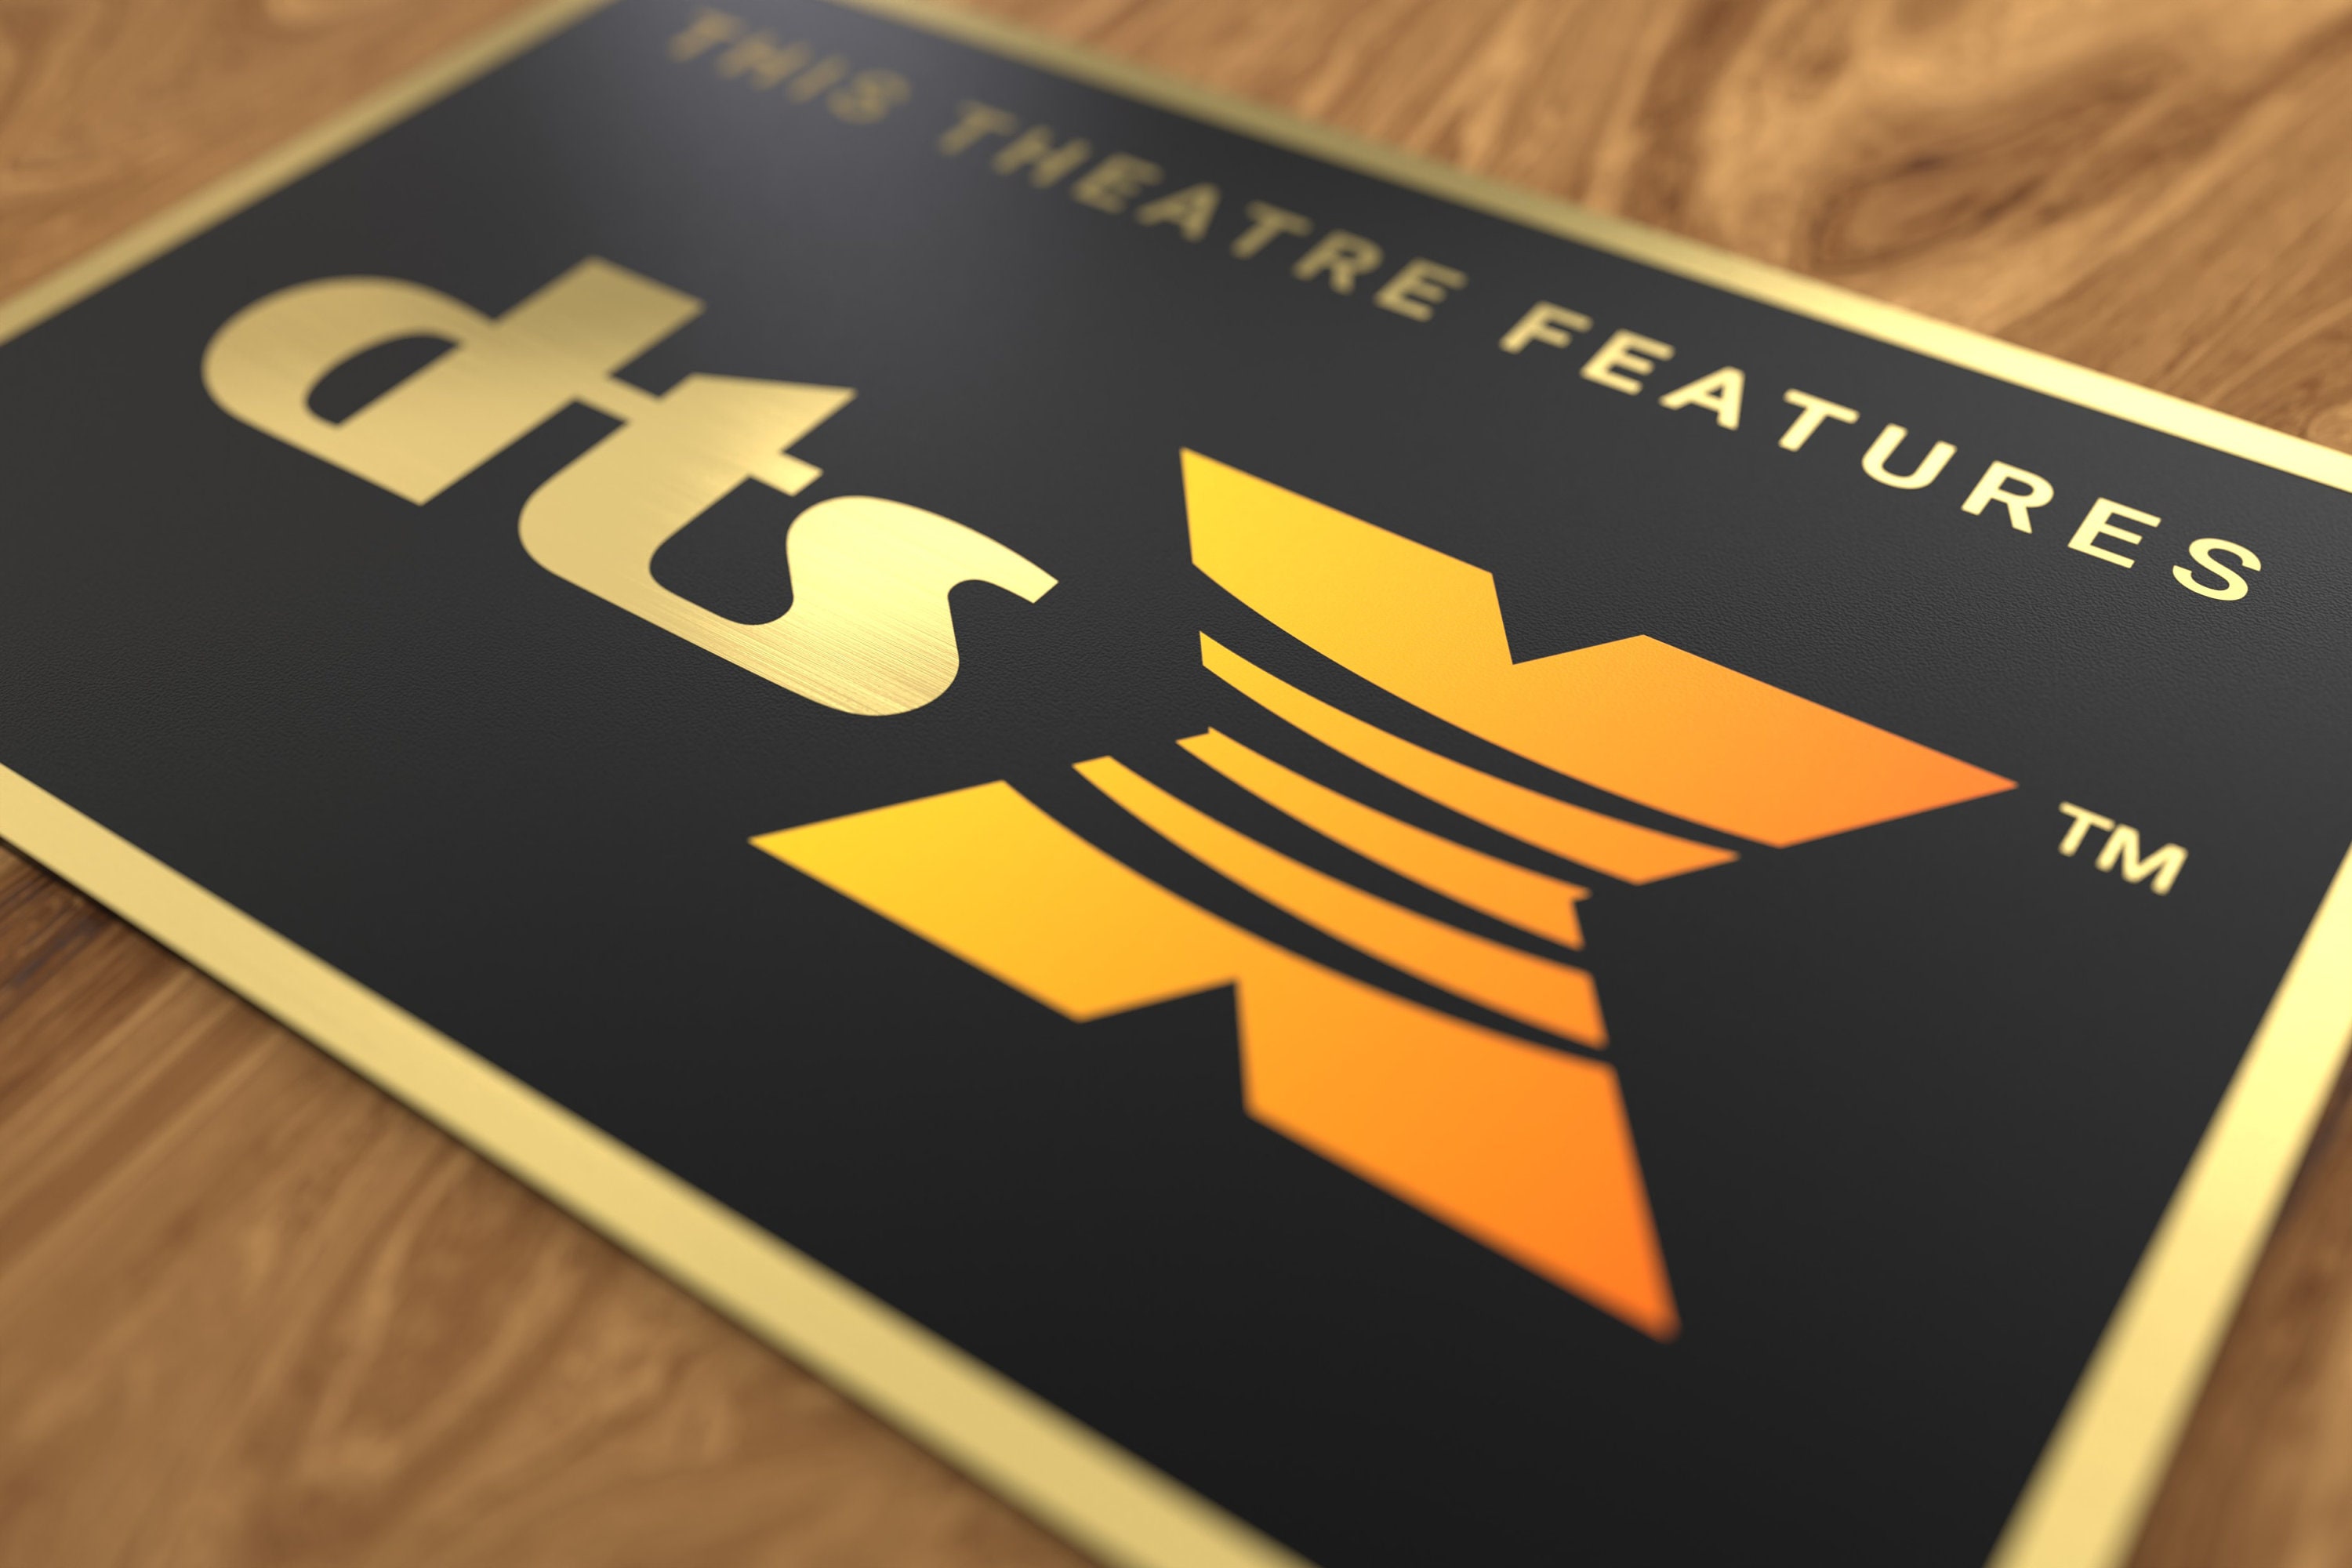 Home Theatre Cinema Sign / Schild / Plakette Gold DTS X Color Heimkino 